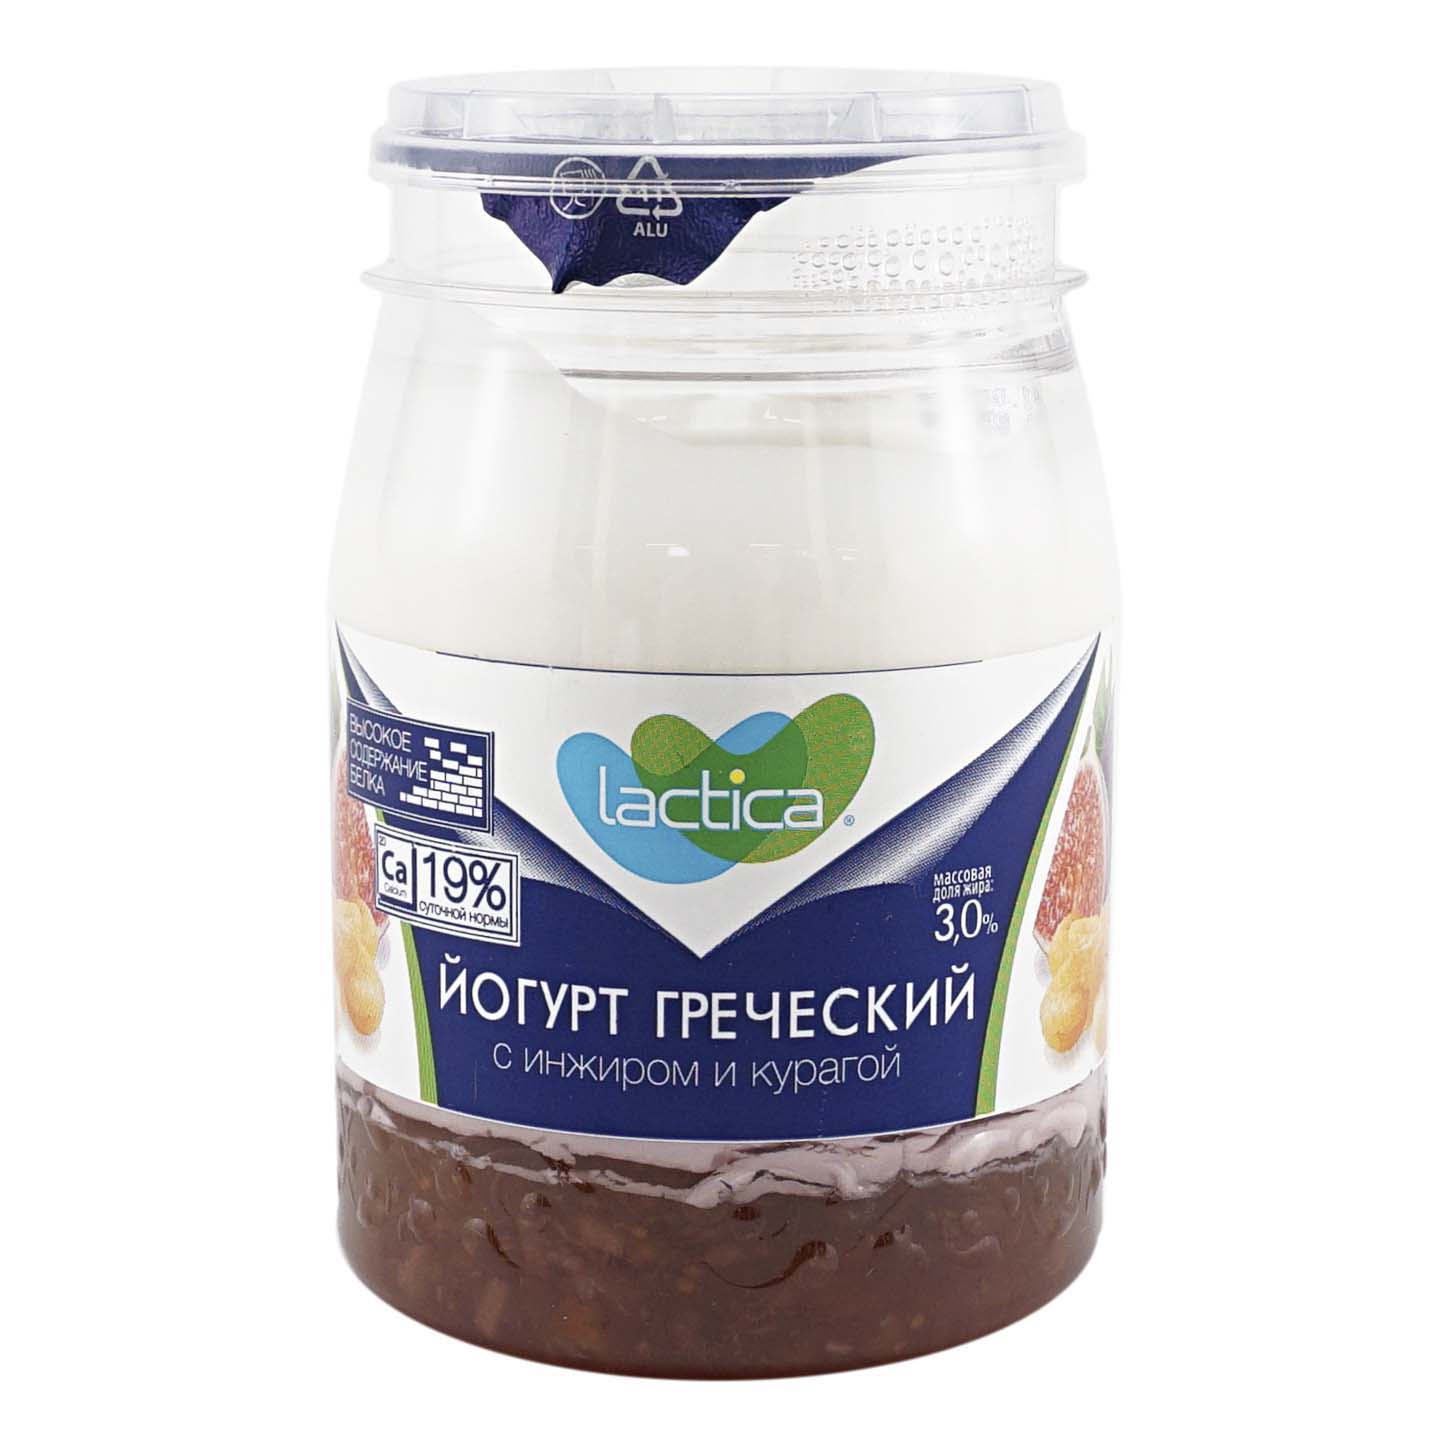 Йогурт Lactica греческий, двухслойный, с инжиром и курагой, 3%, 190 г